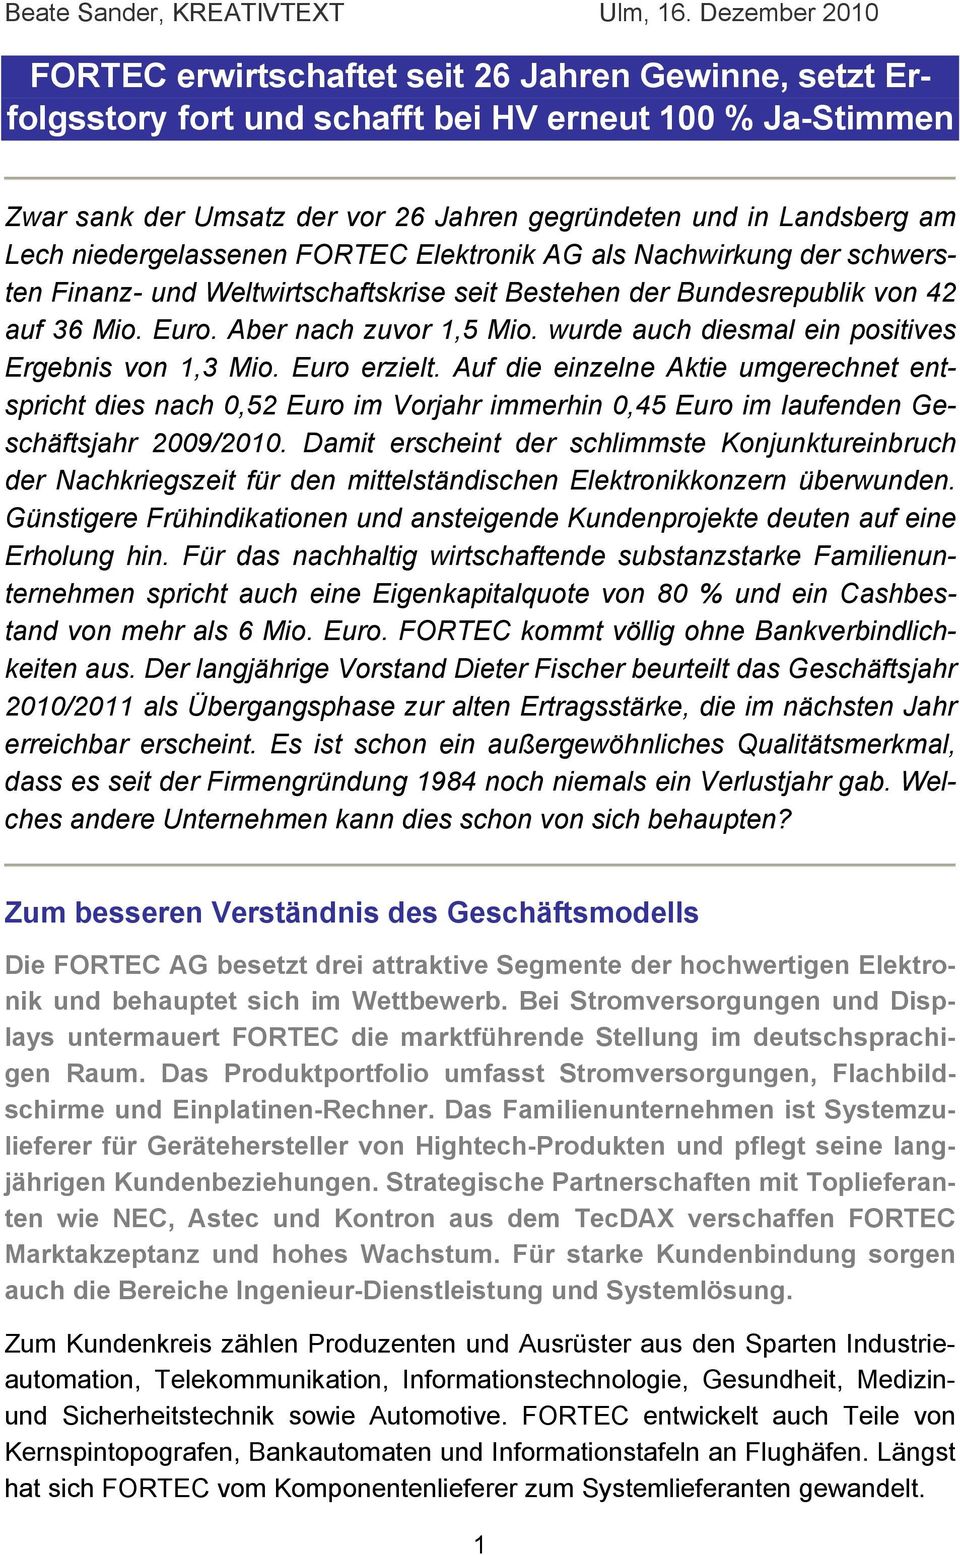 Lech niedergelassenen FORTEC Elektronik AG als Nachwirkung der schwersten Finanz- und Weltwirtschaftskrise seit Bestehen der Bundesrepublik von 42 auf 36 Mio. Euro. Aber nach zuvor 1,5 Mio.